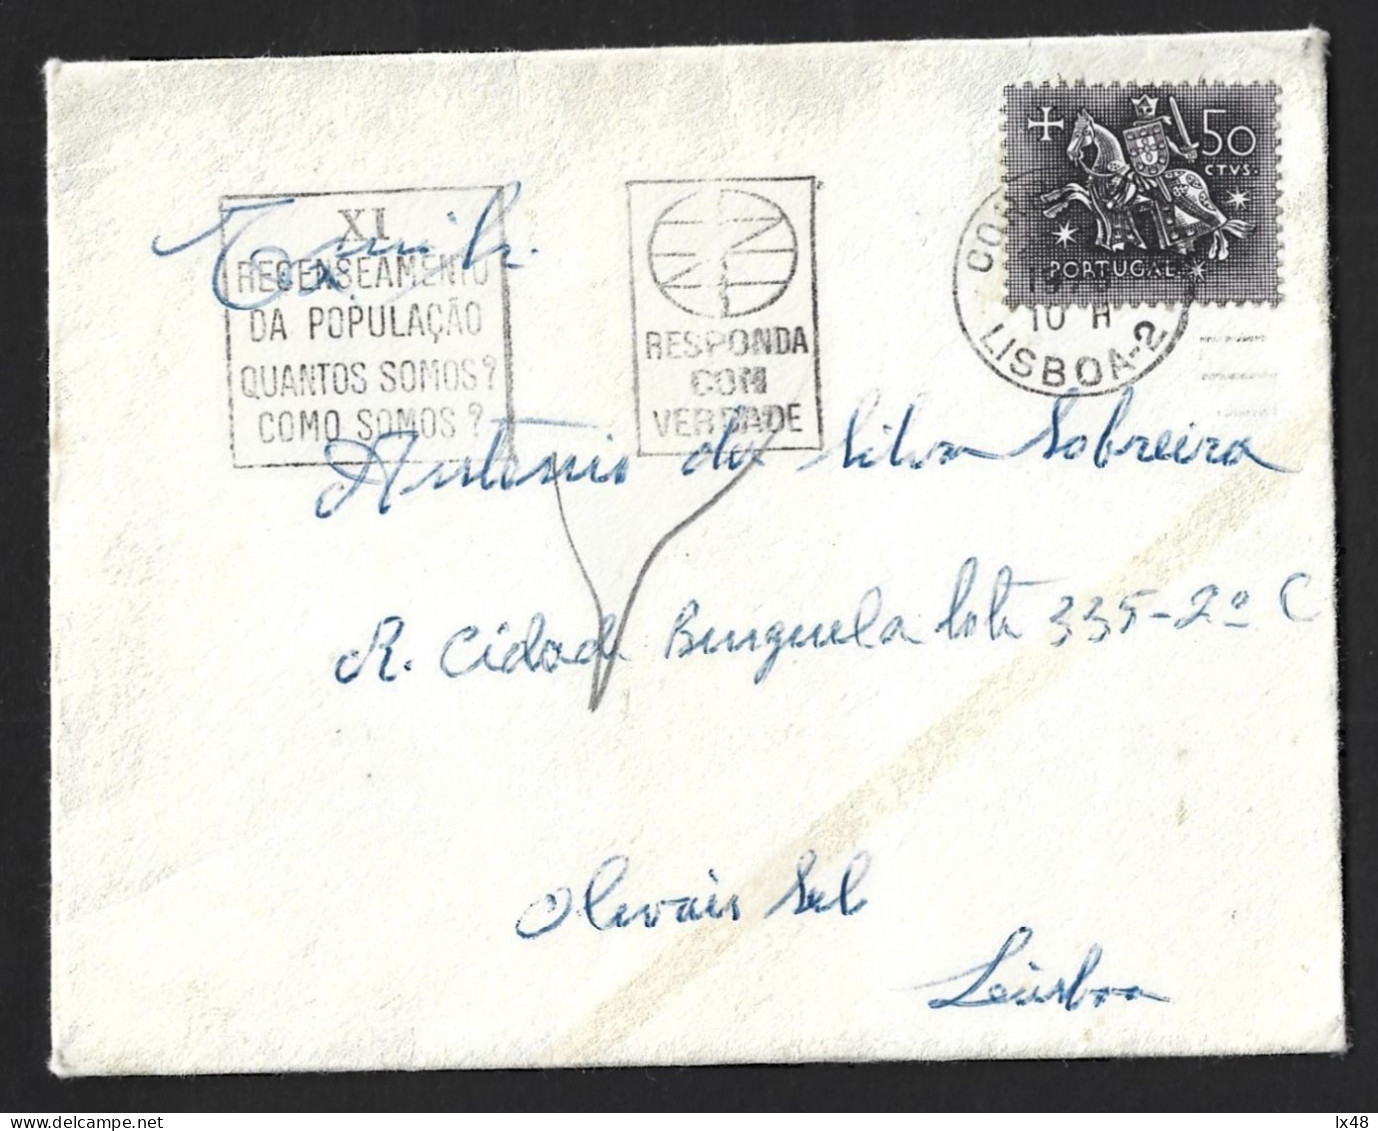 Último Recenseamento Eleitoral De Salazar 1970. Flâmula IX Recenseamento Do Estado Novo, Portugal. Salazar's Last Electo - Briefe U. Dokumente